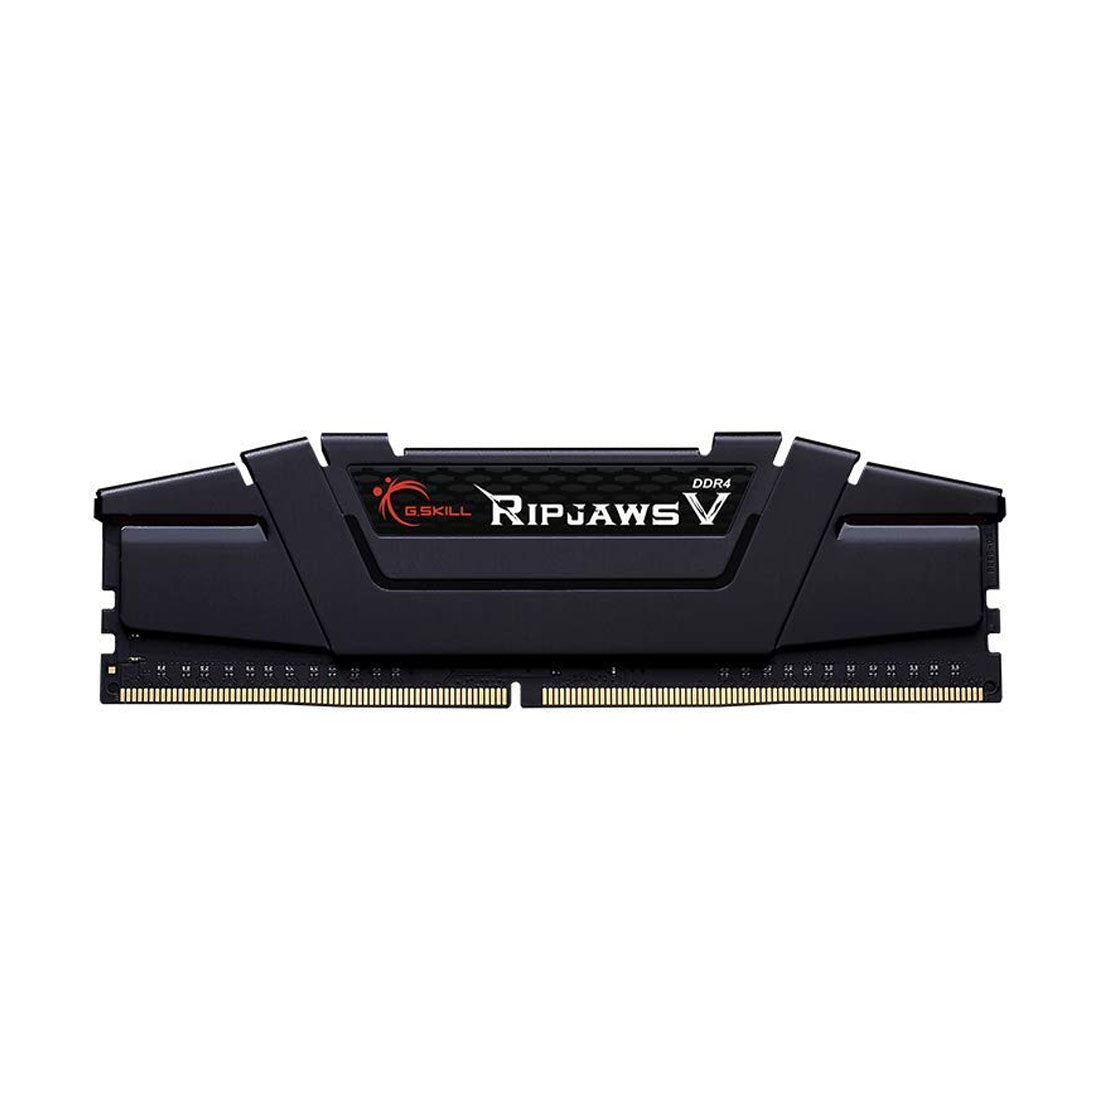 G.SKILL Ripjaws V RAM DDR4 3200MHz Desktop Memory